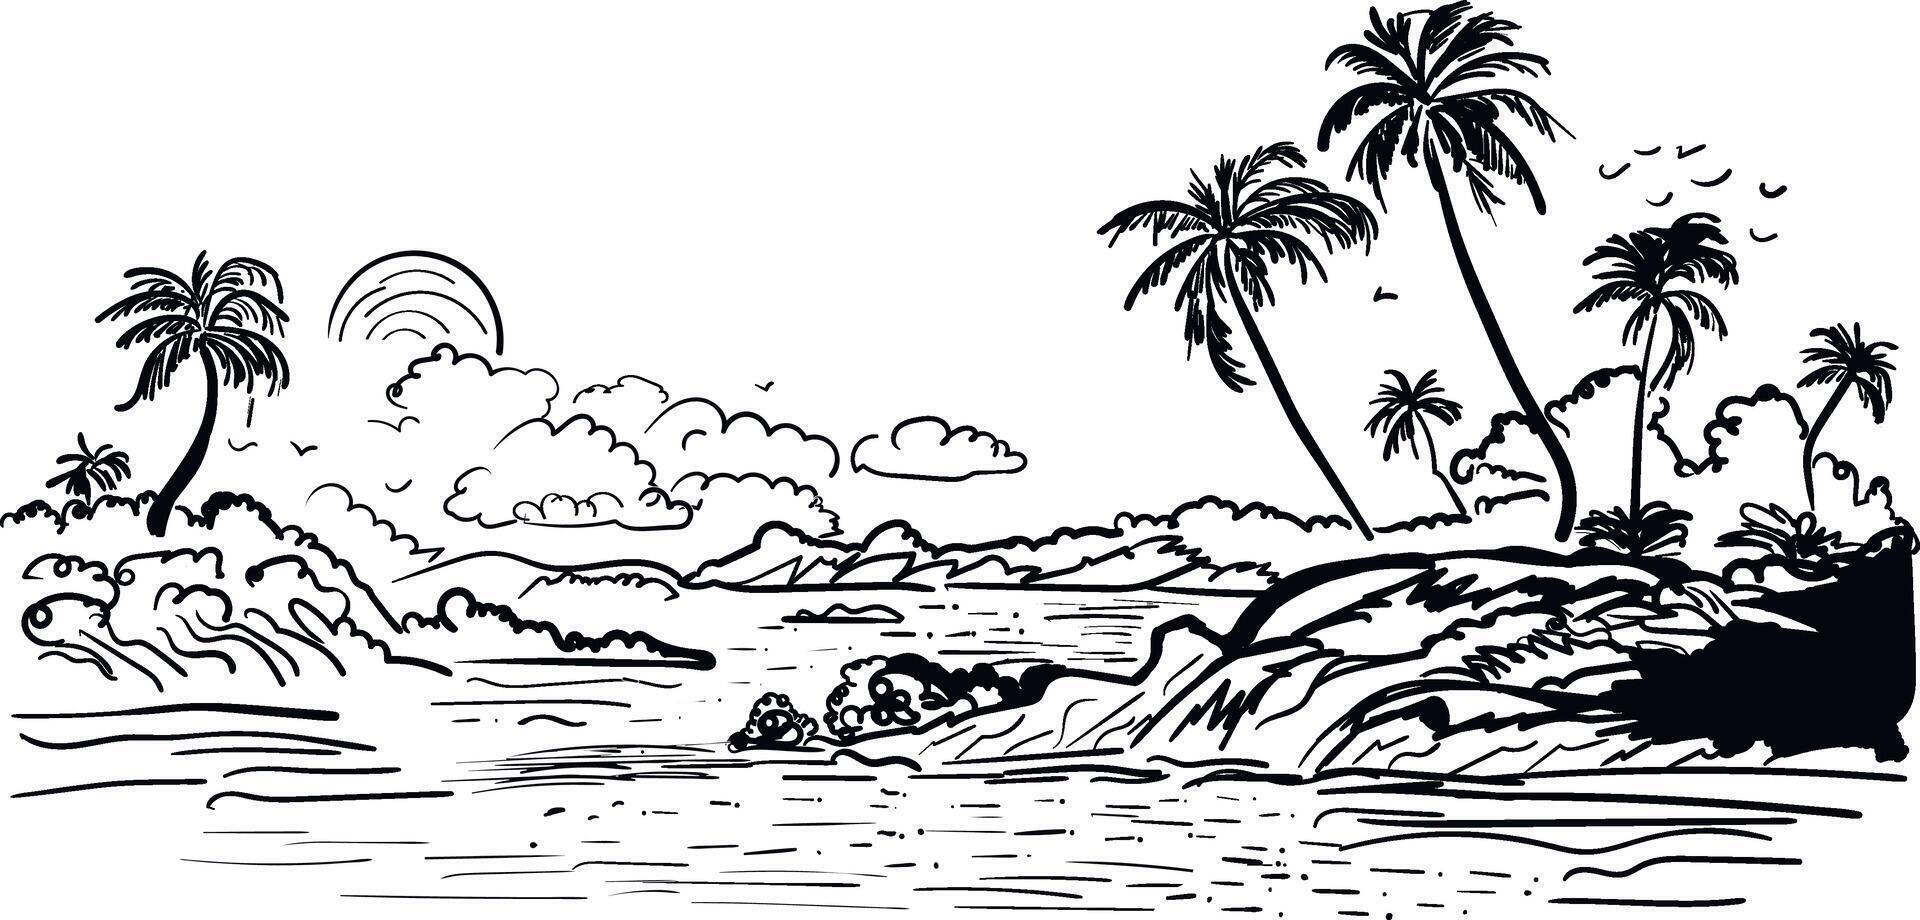 tropical panorámico contorno bosquejo palma arboles mar olas mano dibujado paisaje vector